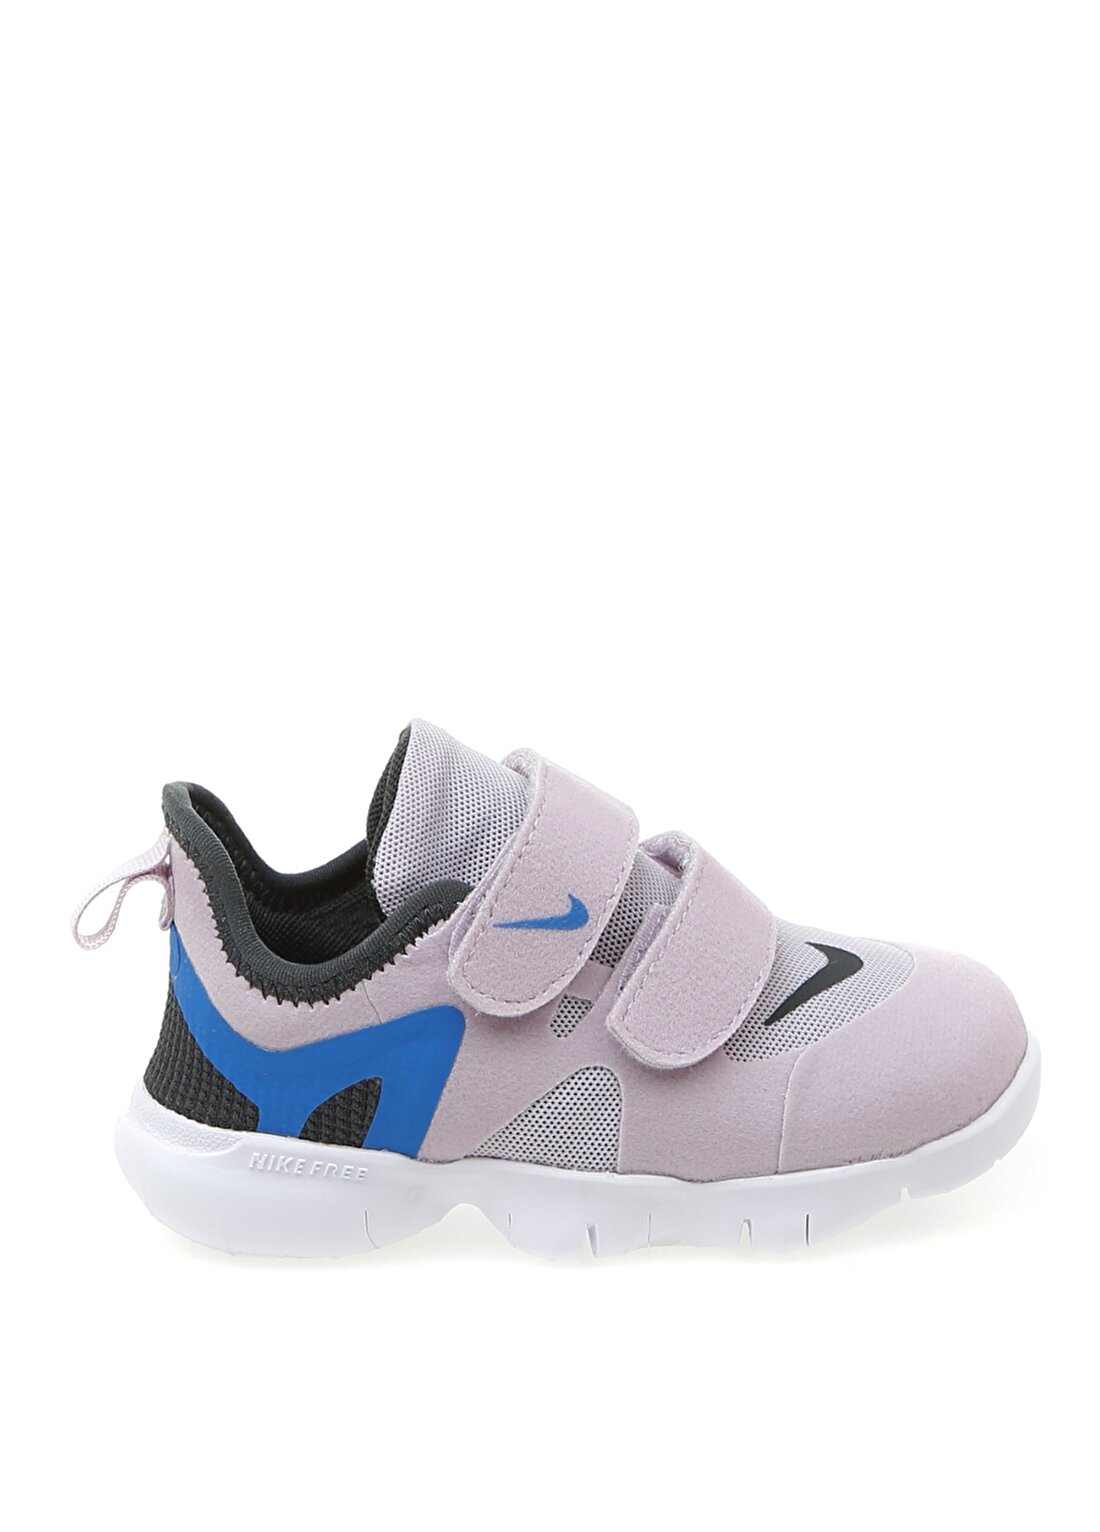 Nike Mor Bebek Yürüyüş Ayakkabısı AR4146-541 NIKE FREE RN 5.0 (TDV)